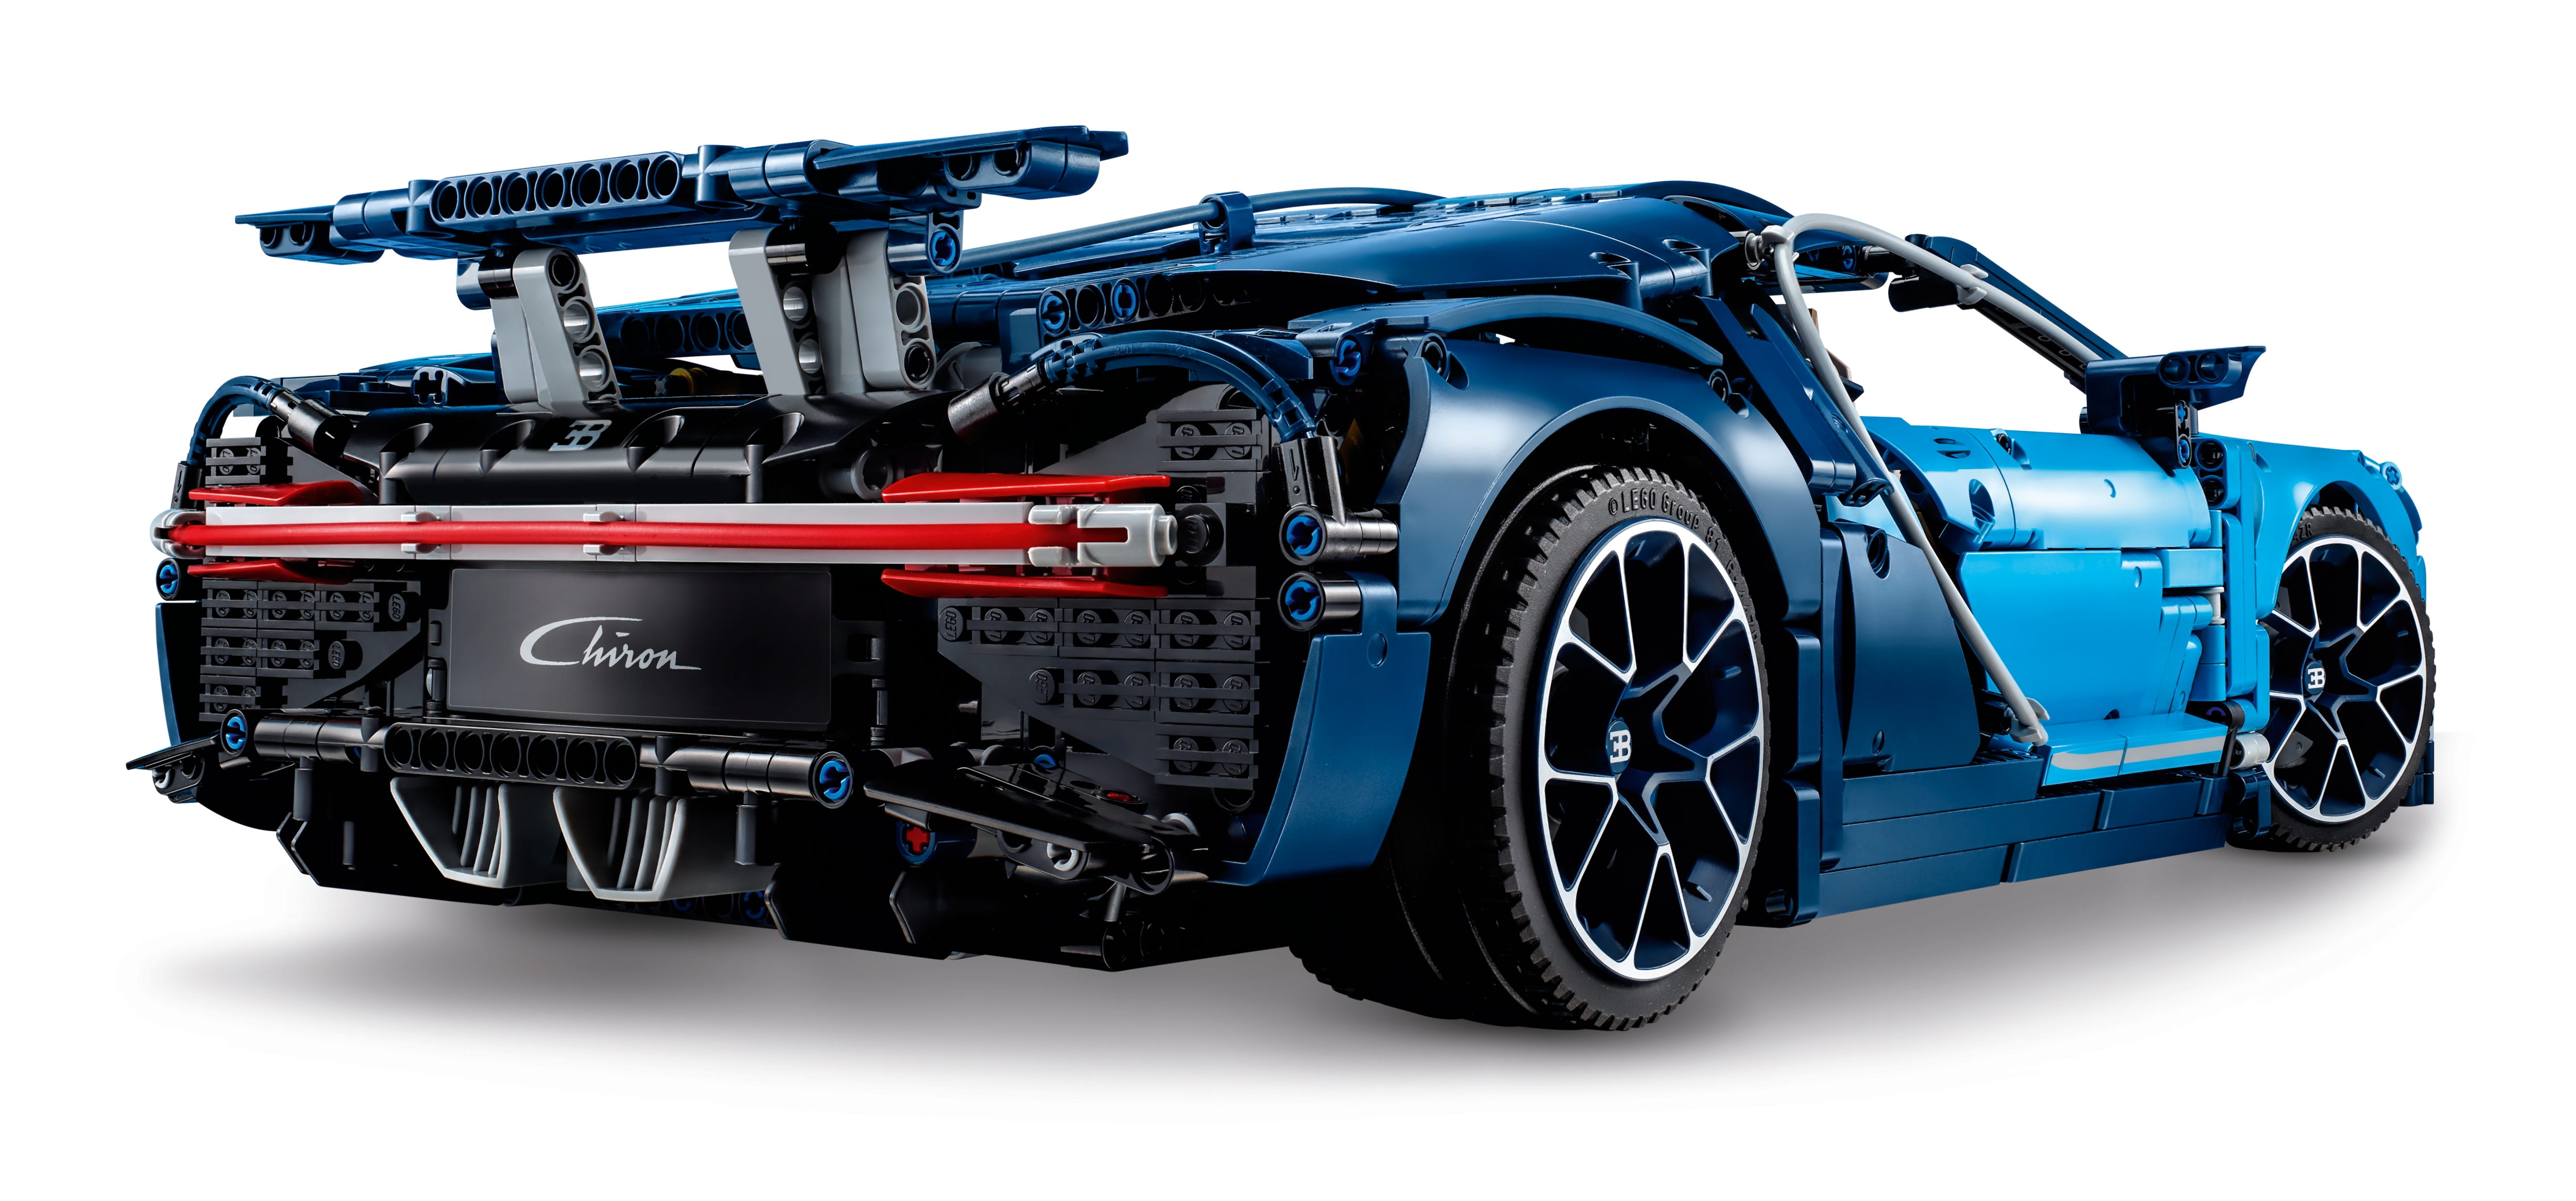 LEGO Technic 42083 Bugatti Chiron — Brick-a-brac-uk